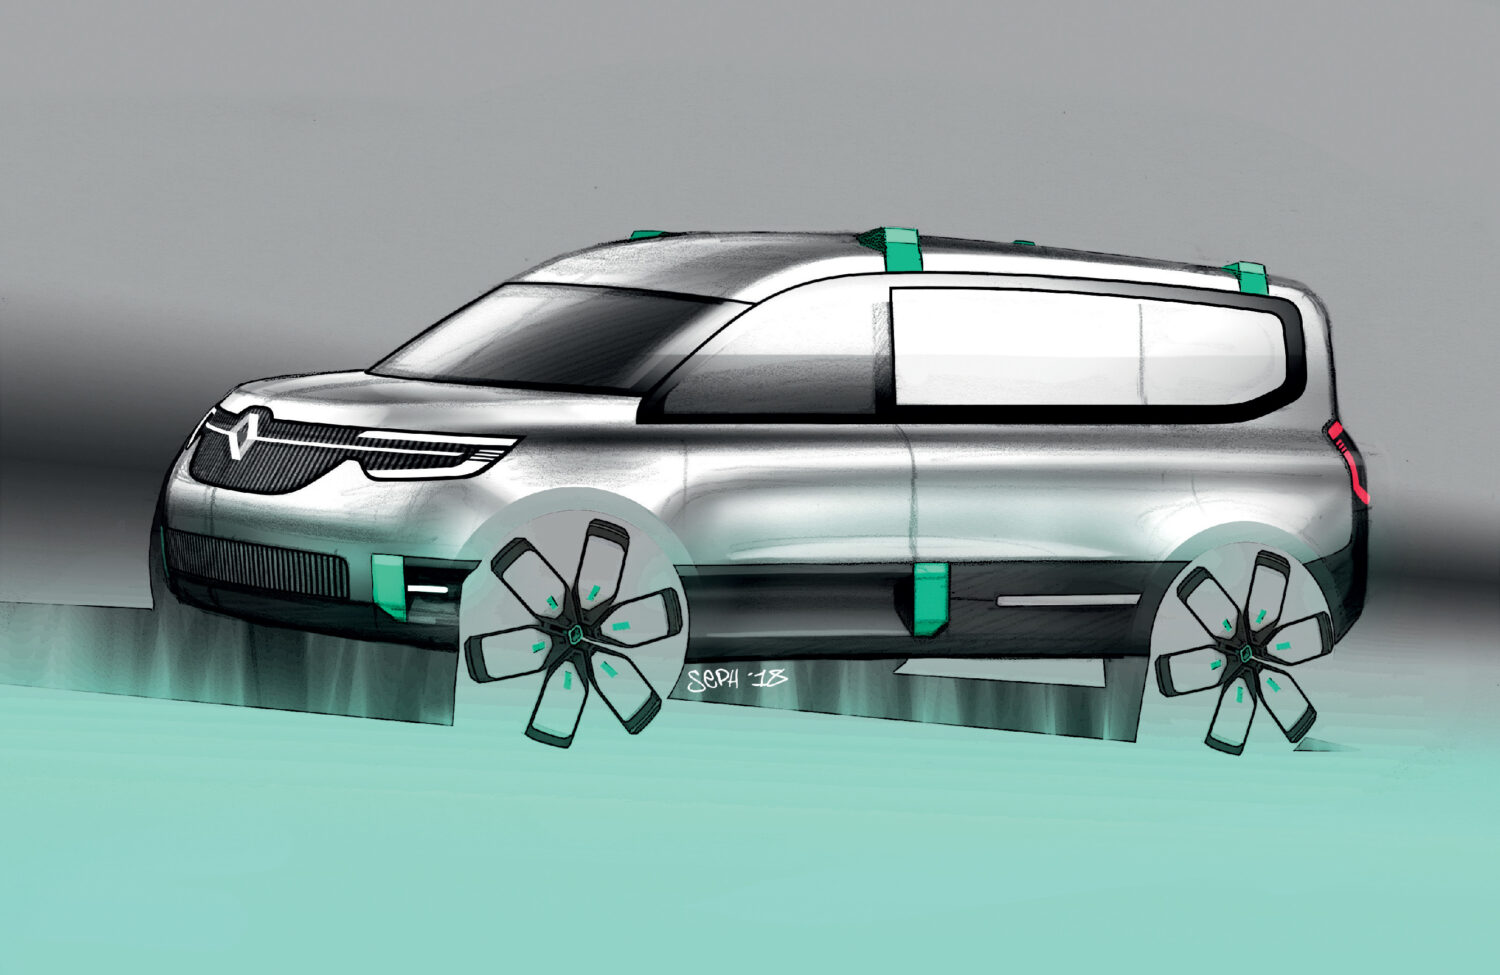 2019 - Kangoo Z.E. Concept Show-car